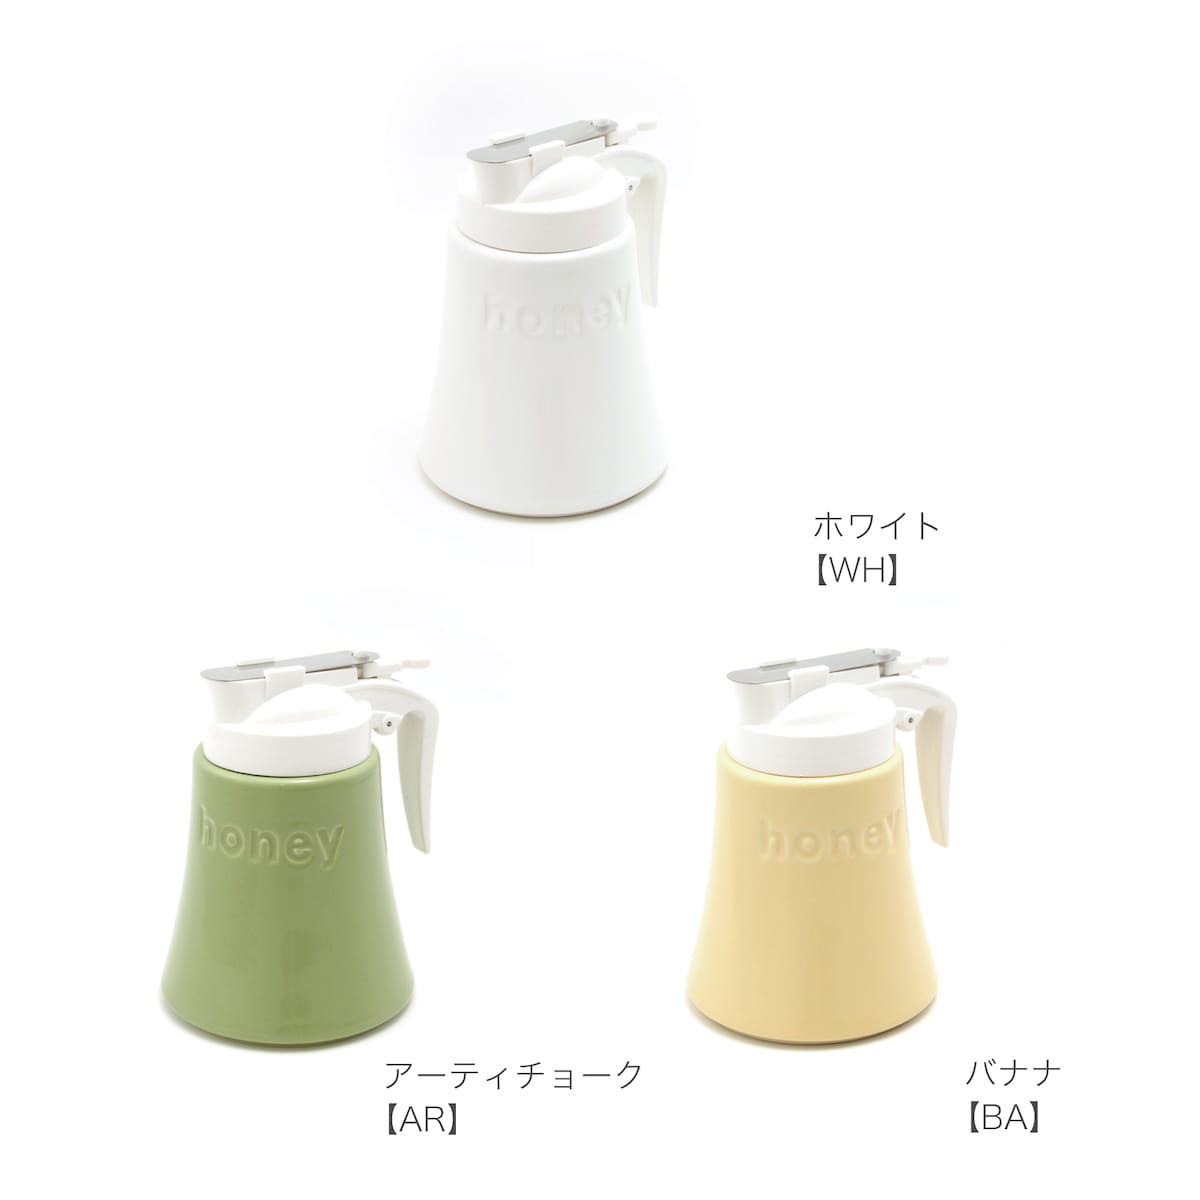 【預購】日本製 zerojapan 陶瓷蜂蜜專用分裝瓶 (340cc) - Cnjpkitchen ❤️ 🇯🇵日本廚具 家居生活雜貨店